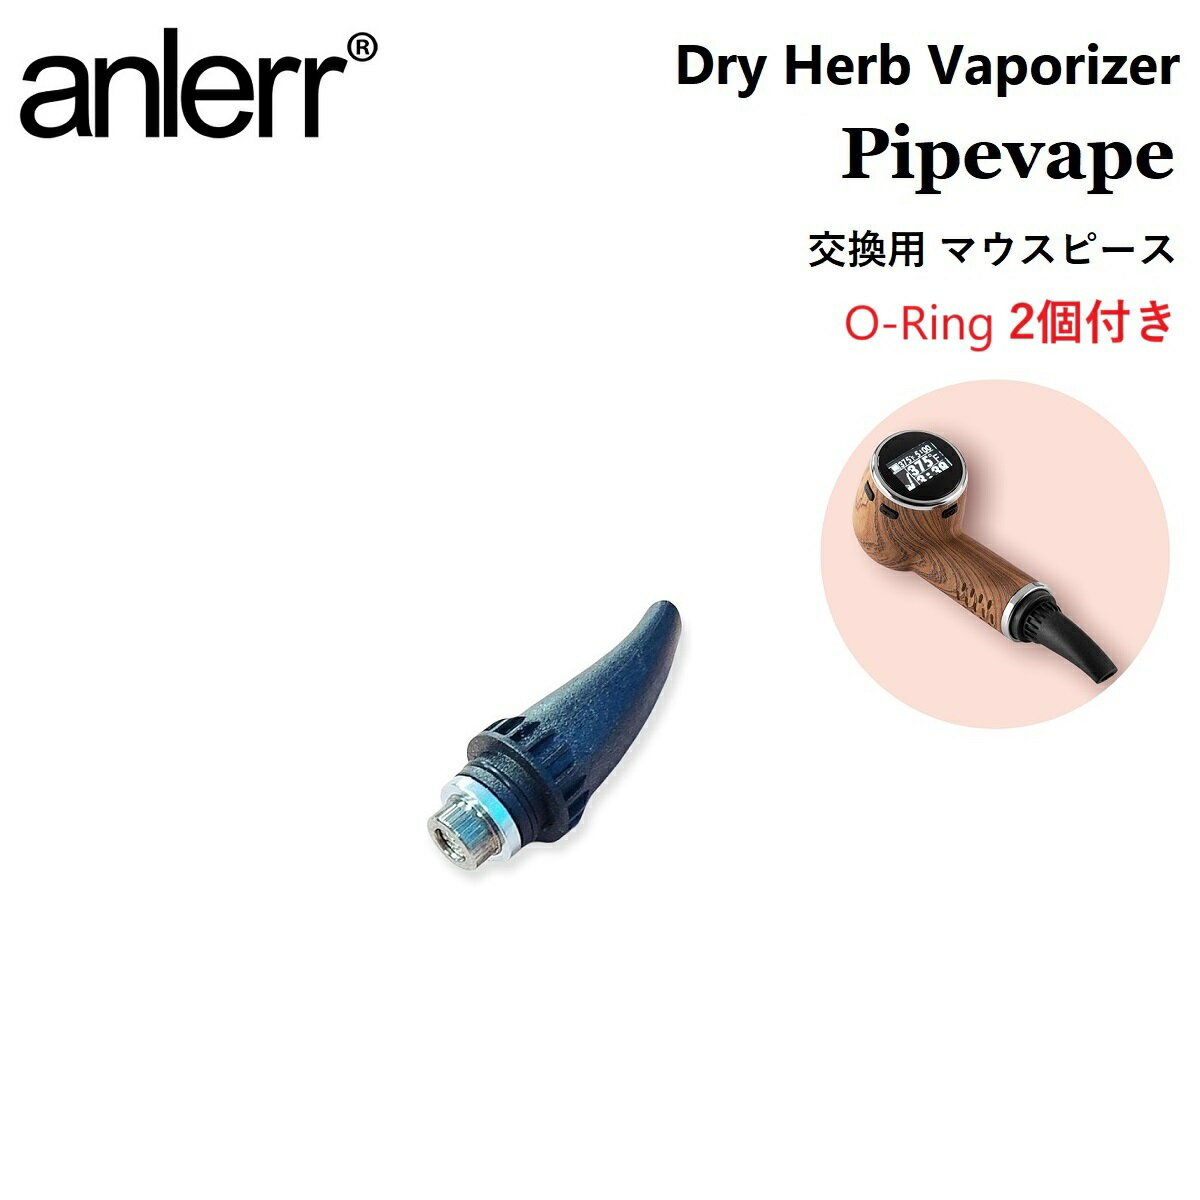 マウスピース anlerr PipeVape mouthpiece パイプベイプ専用 ドライハーブ 葉たばこ 乾燥ハーブ シャグ 交換用 O-Ring 2個付き ヴェポライザー 加熱式タバコ 電子VAPE VAPE ベイプ アクセサリー